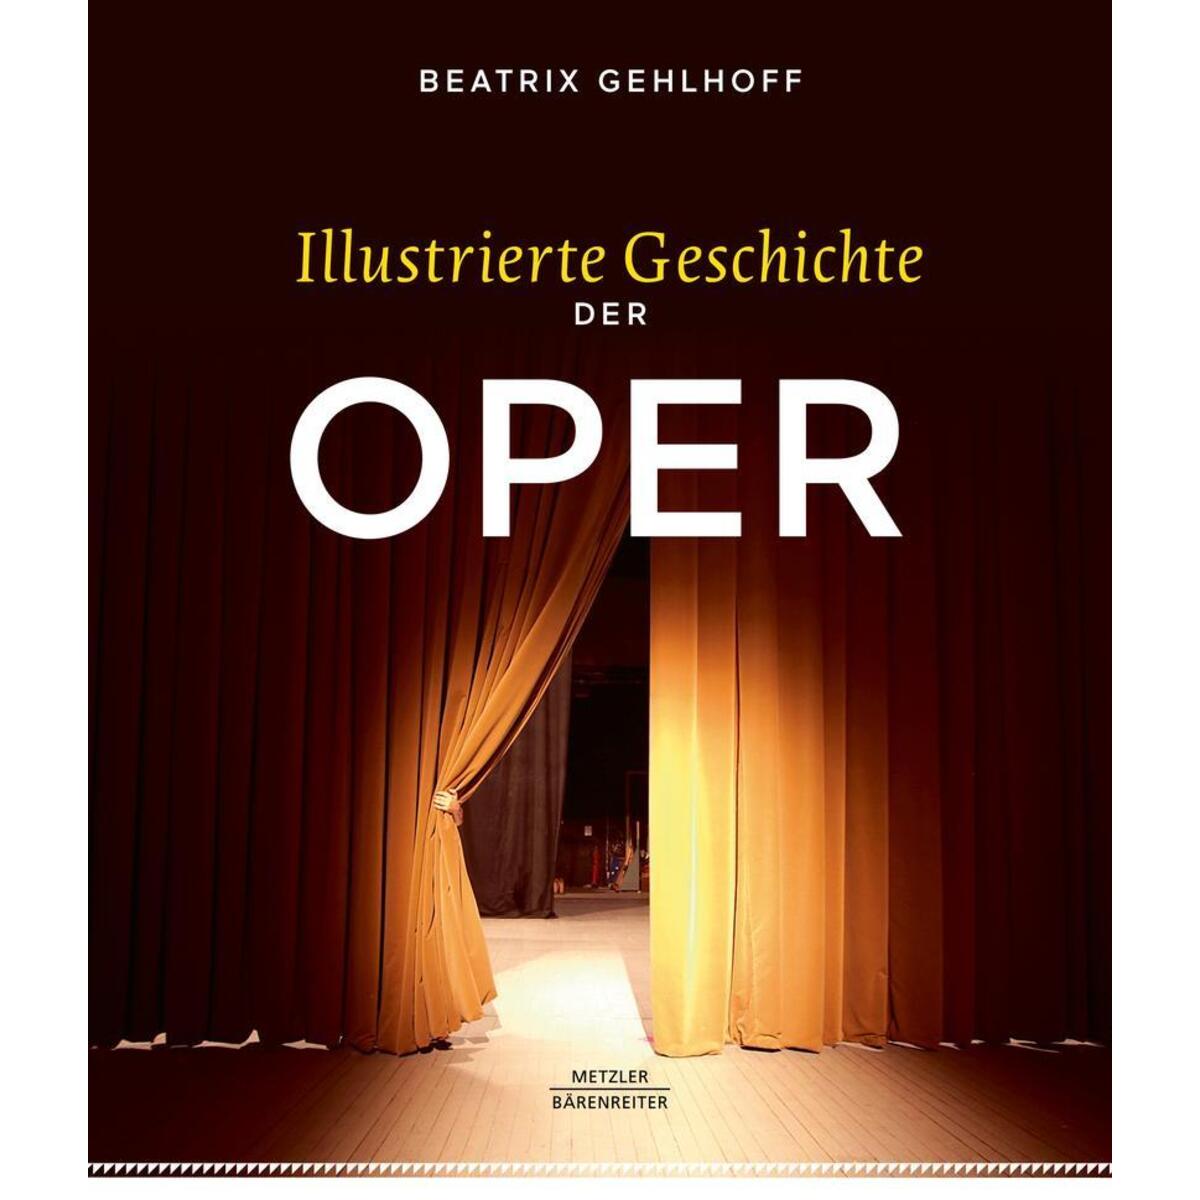 Illustrierte Geschichte der Oper von Metzler Verlag, J.B.